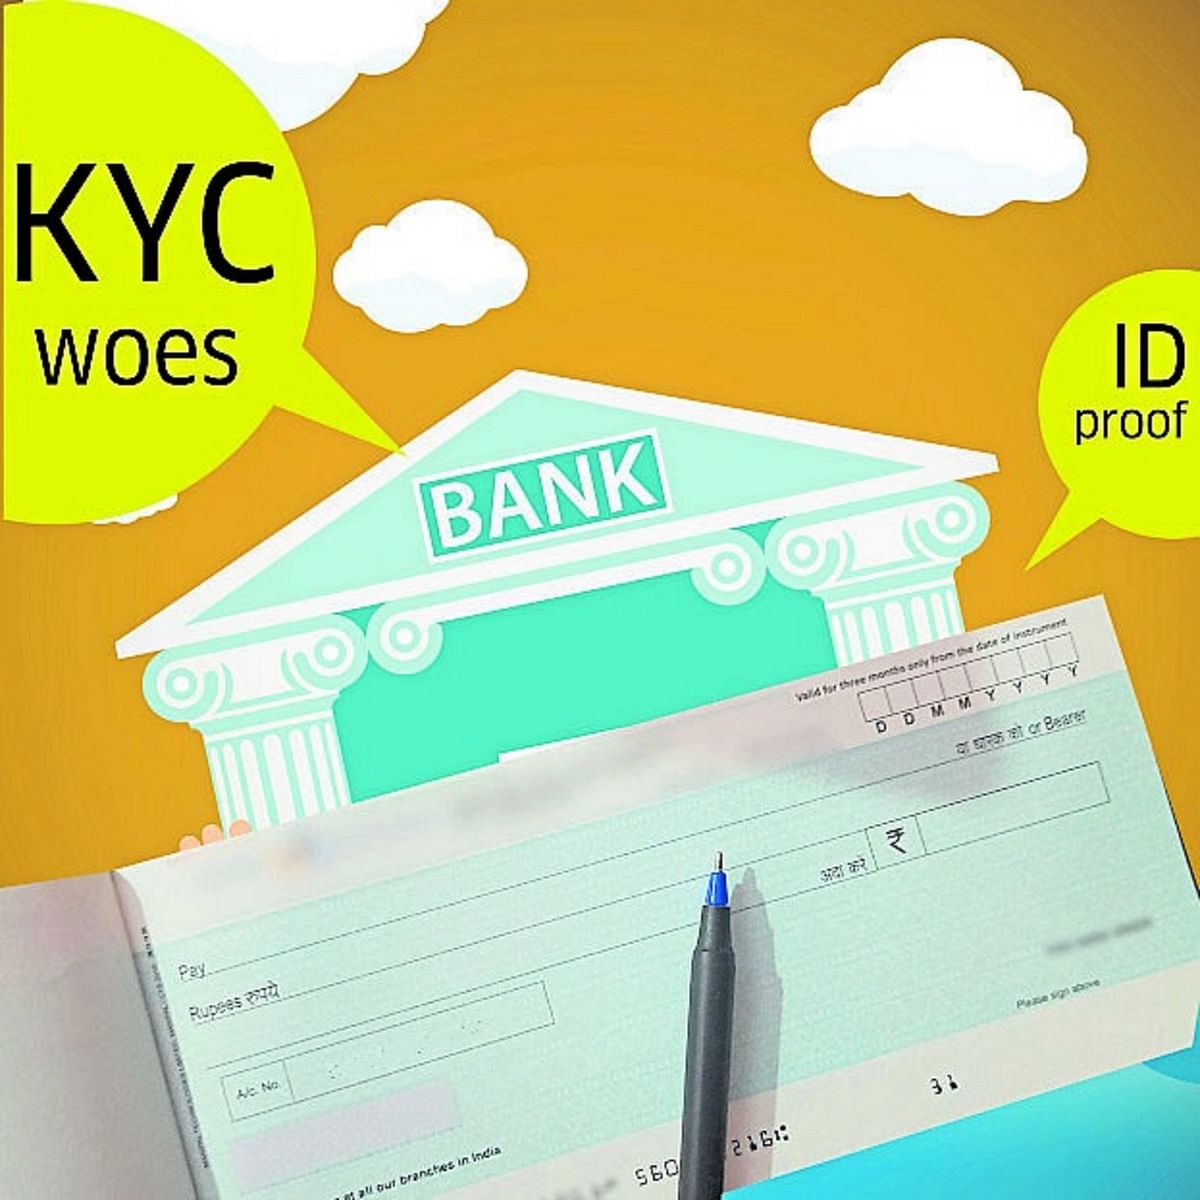 Bank accounts blocked: Many facing KYC woes